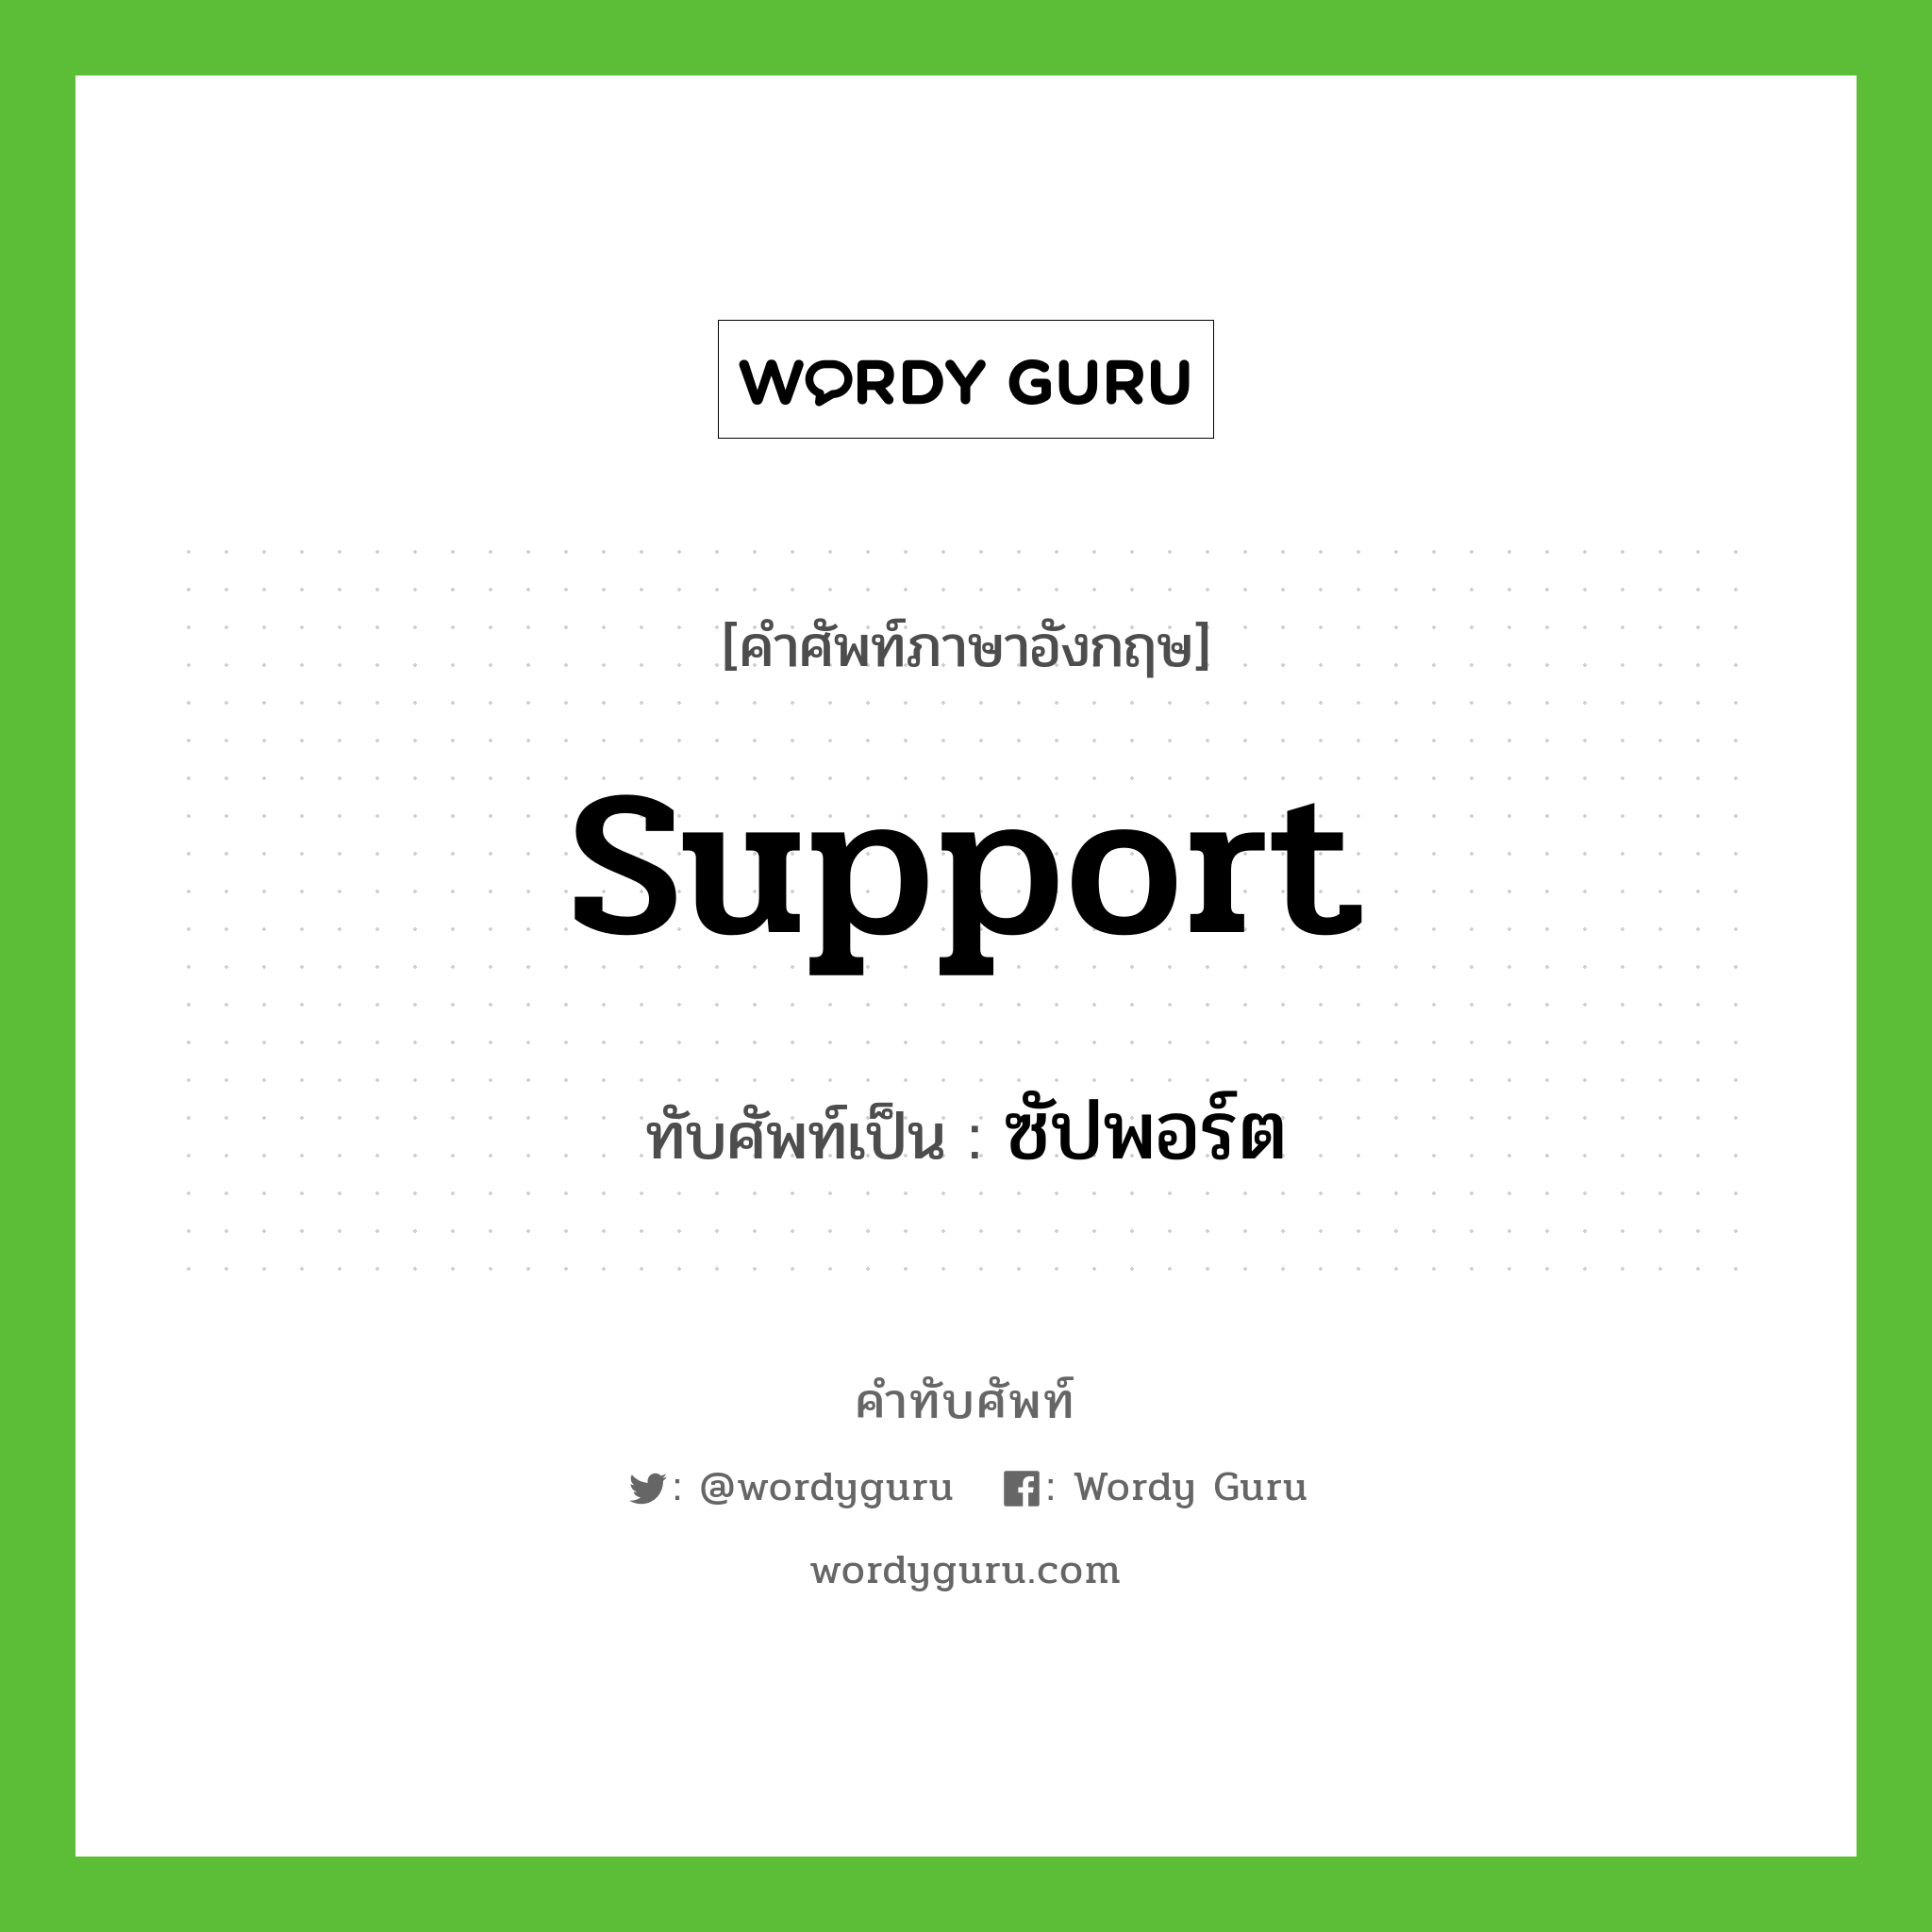 support เขียนเป็นคำไทยว่าอะไร?, คำศัพท์ภาษาอังกฤษ support ทับศัพท์เป็น ซัปพอร์ต